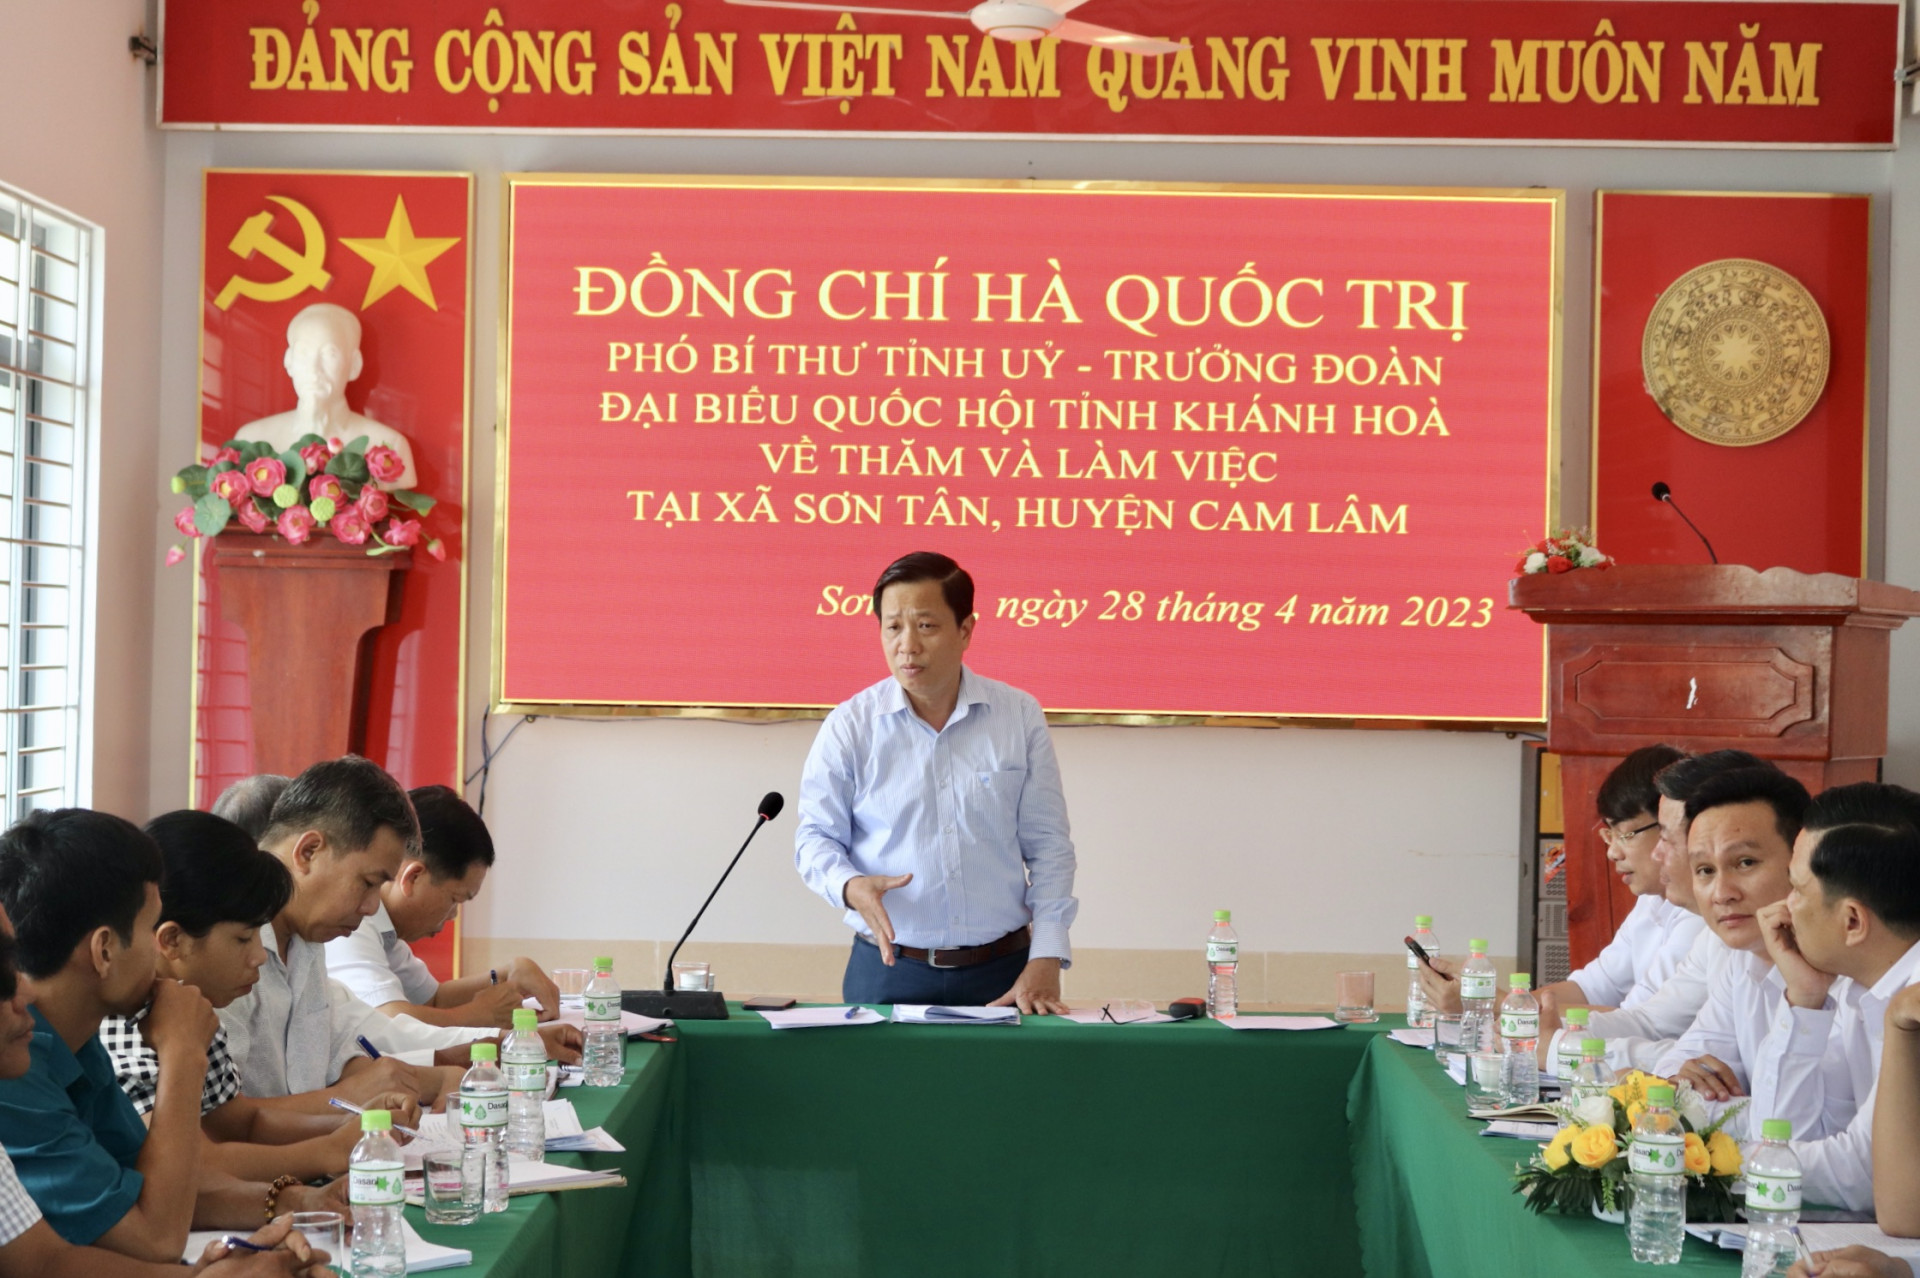 Ông Hà Quốc Trị làm việc về công tác xây dựng Đảng tại xã Sơn Tân.